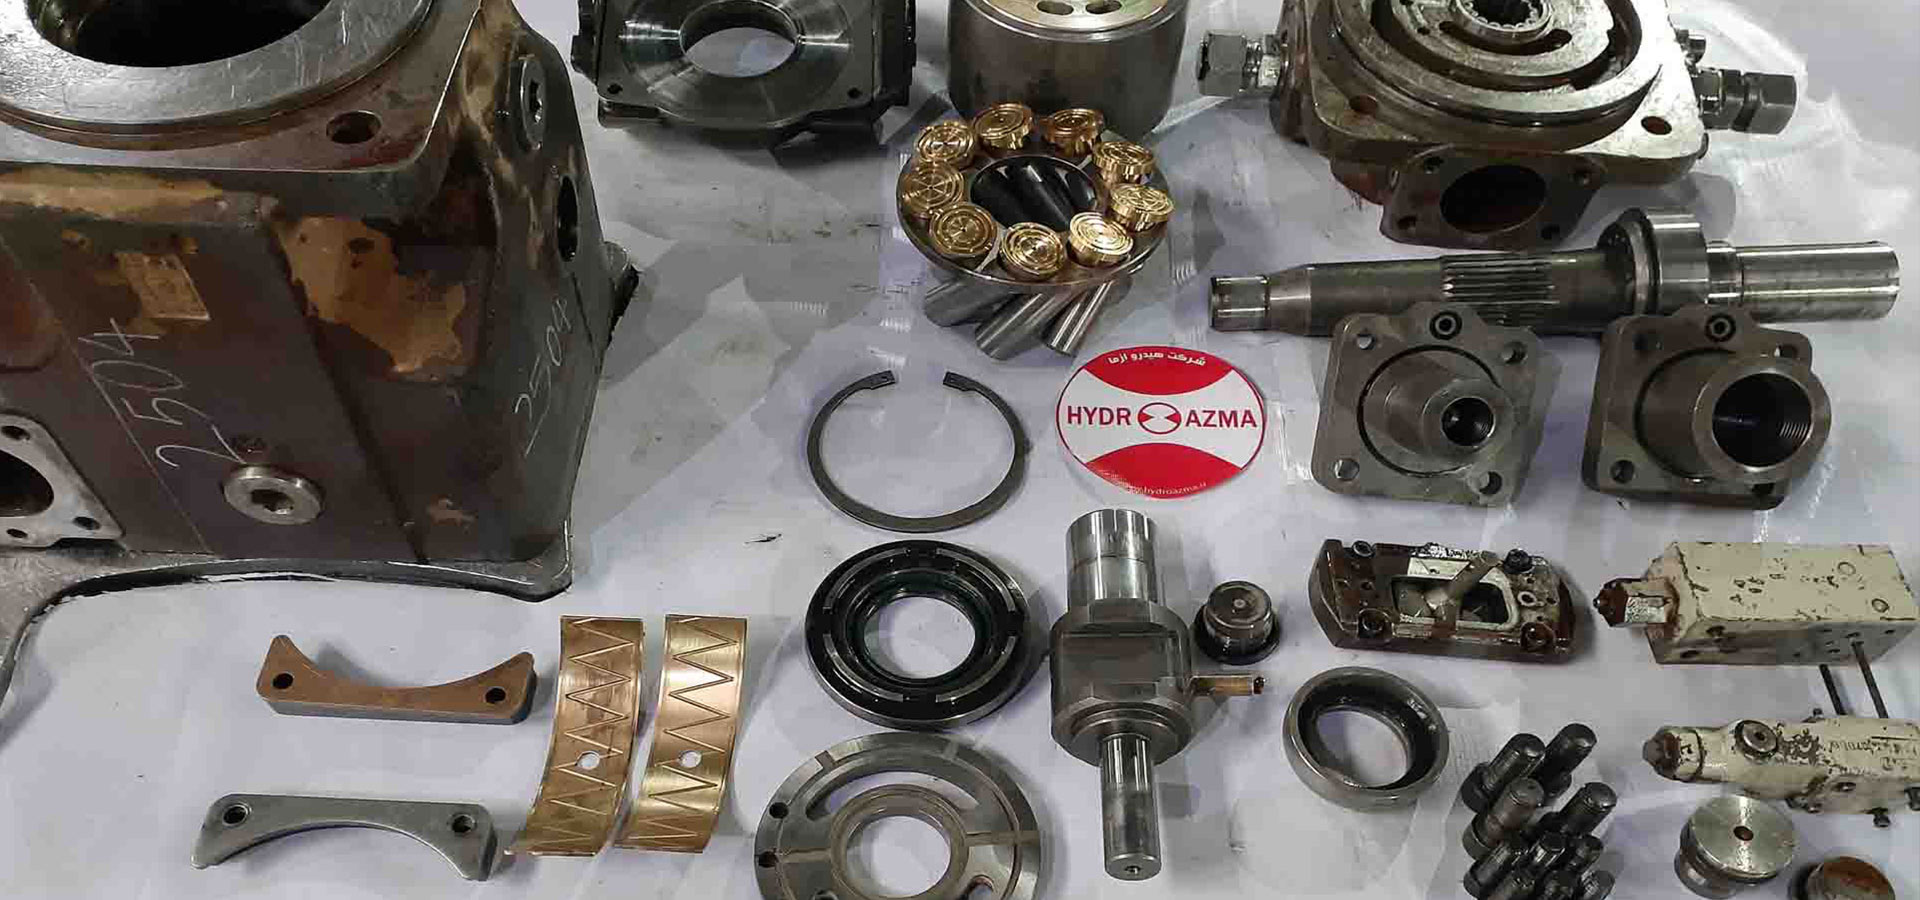 Repair of hydraulic pump, hydraulic motor and hydraulic valve